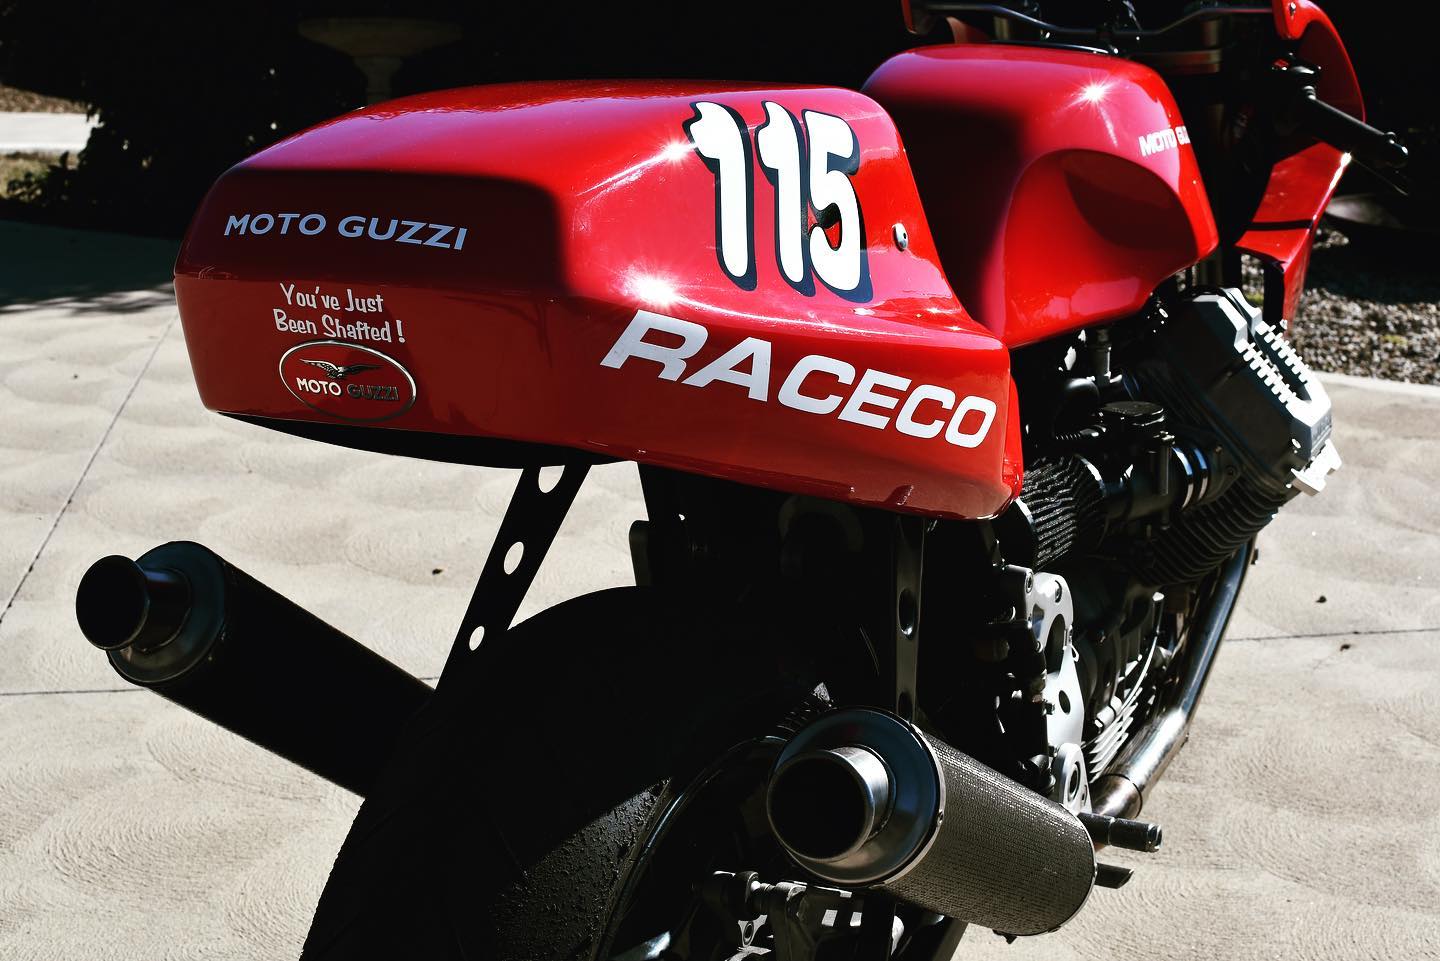 Moto Guzzi RaceCo Daytona 1225. Ready for active duty. 9 sleeps till my first ride. #